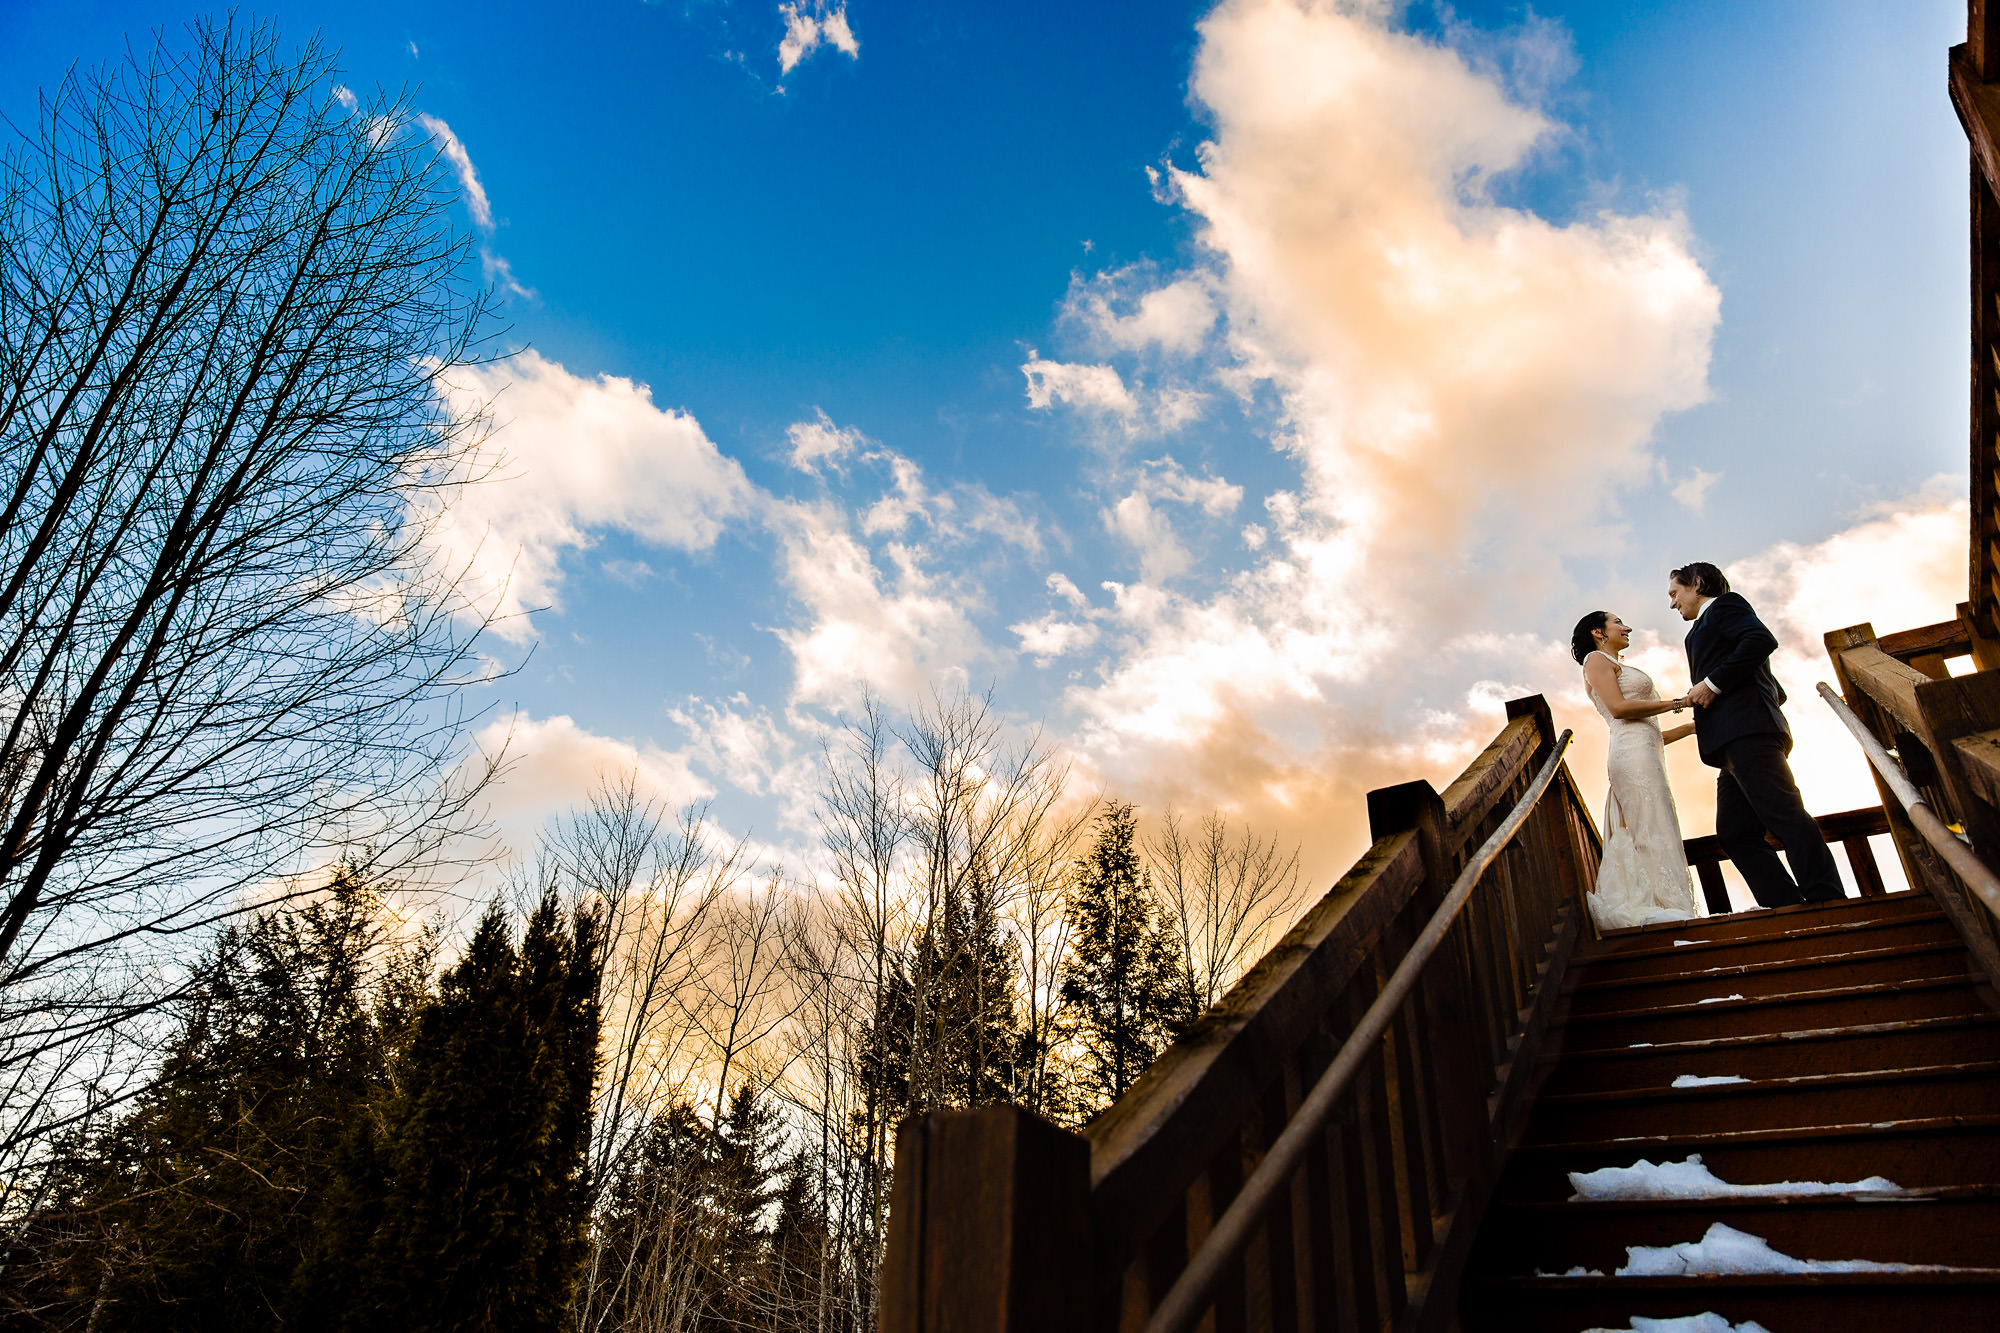 A wedding portrait taken during a winter wedding in Western Maine